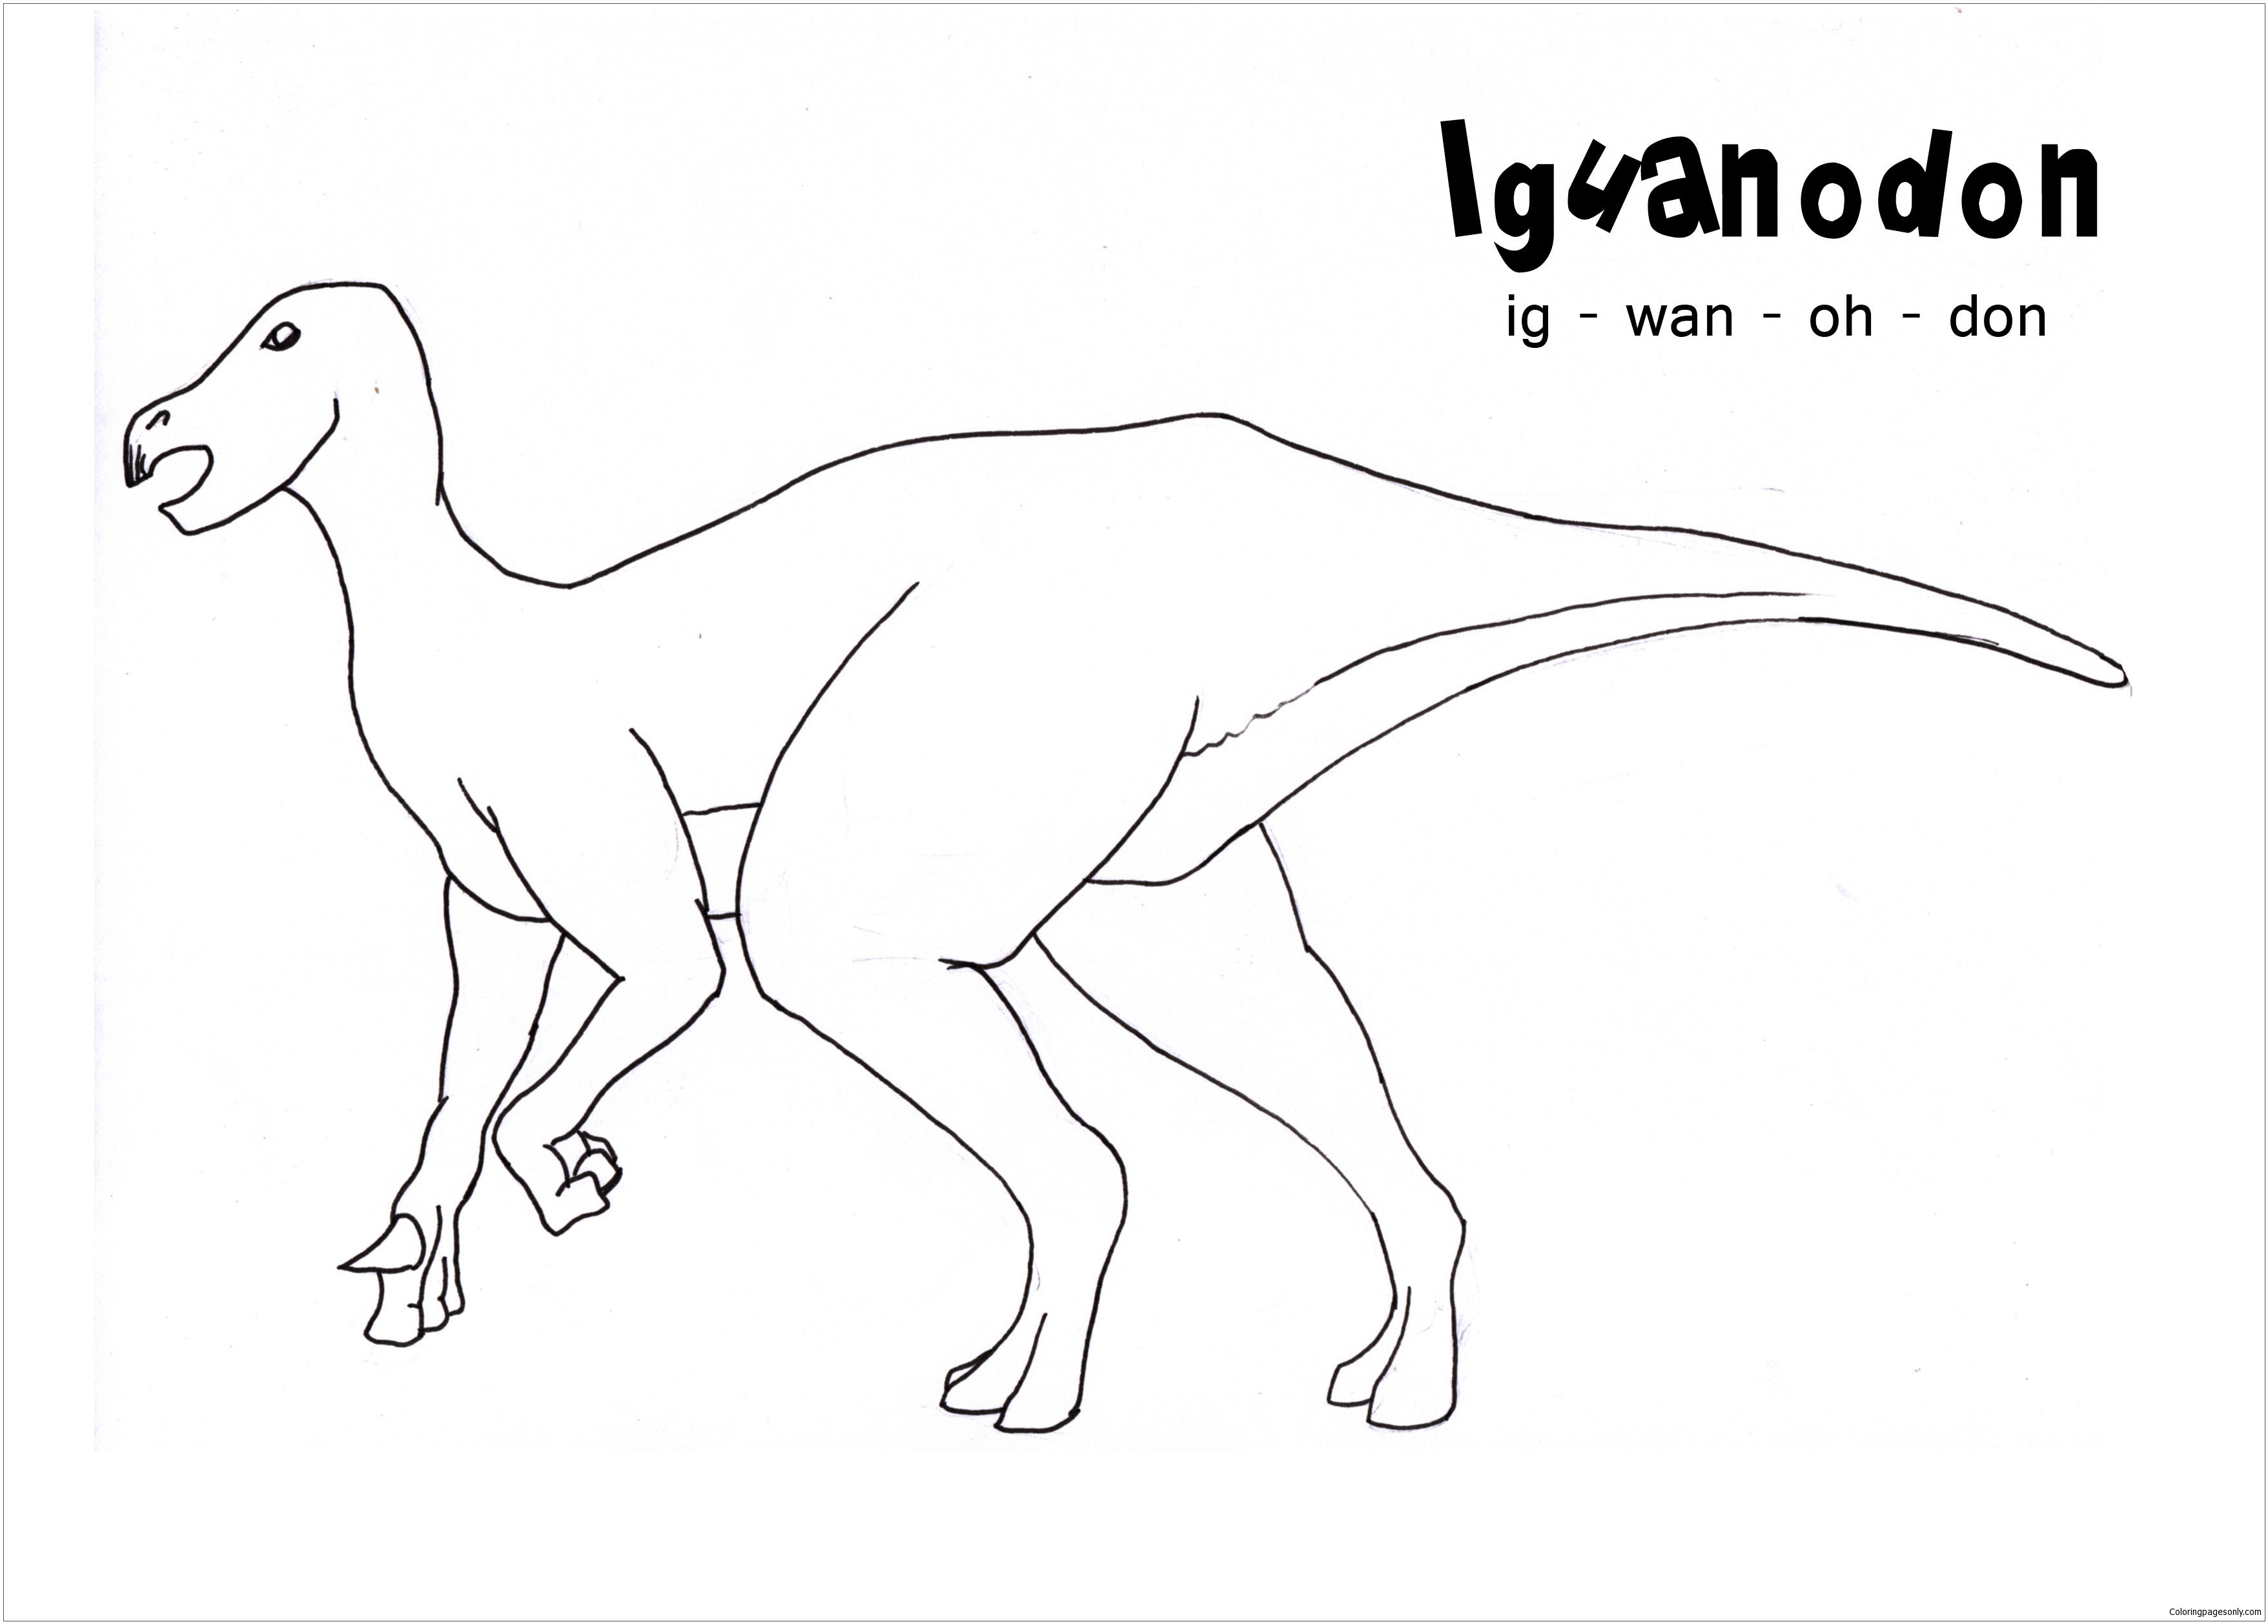 Iguanodon-Dinosaurier von Iguanodon